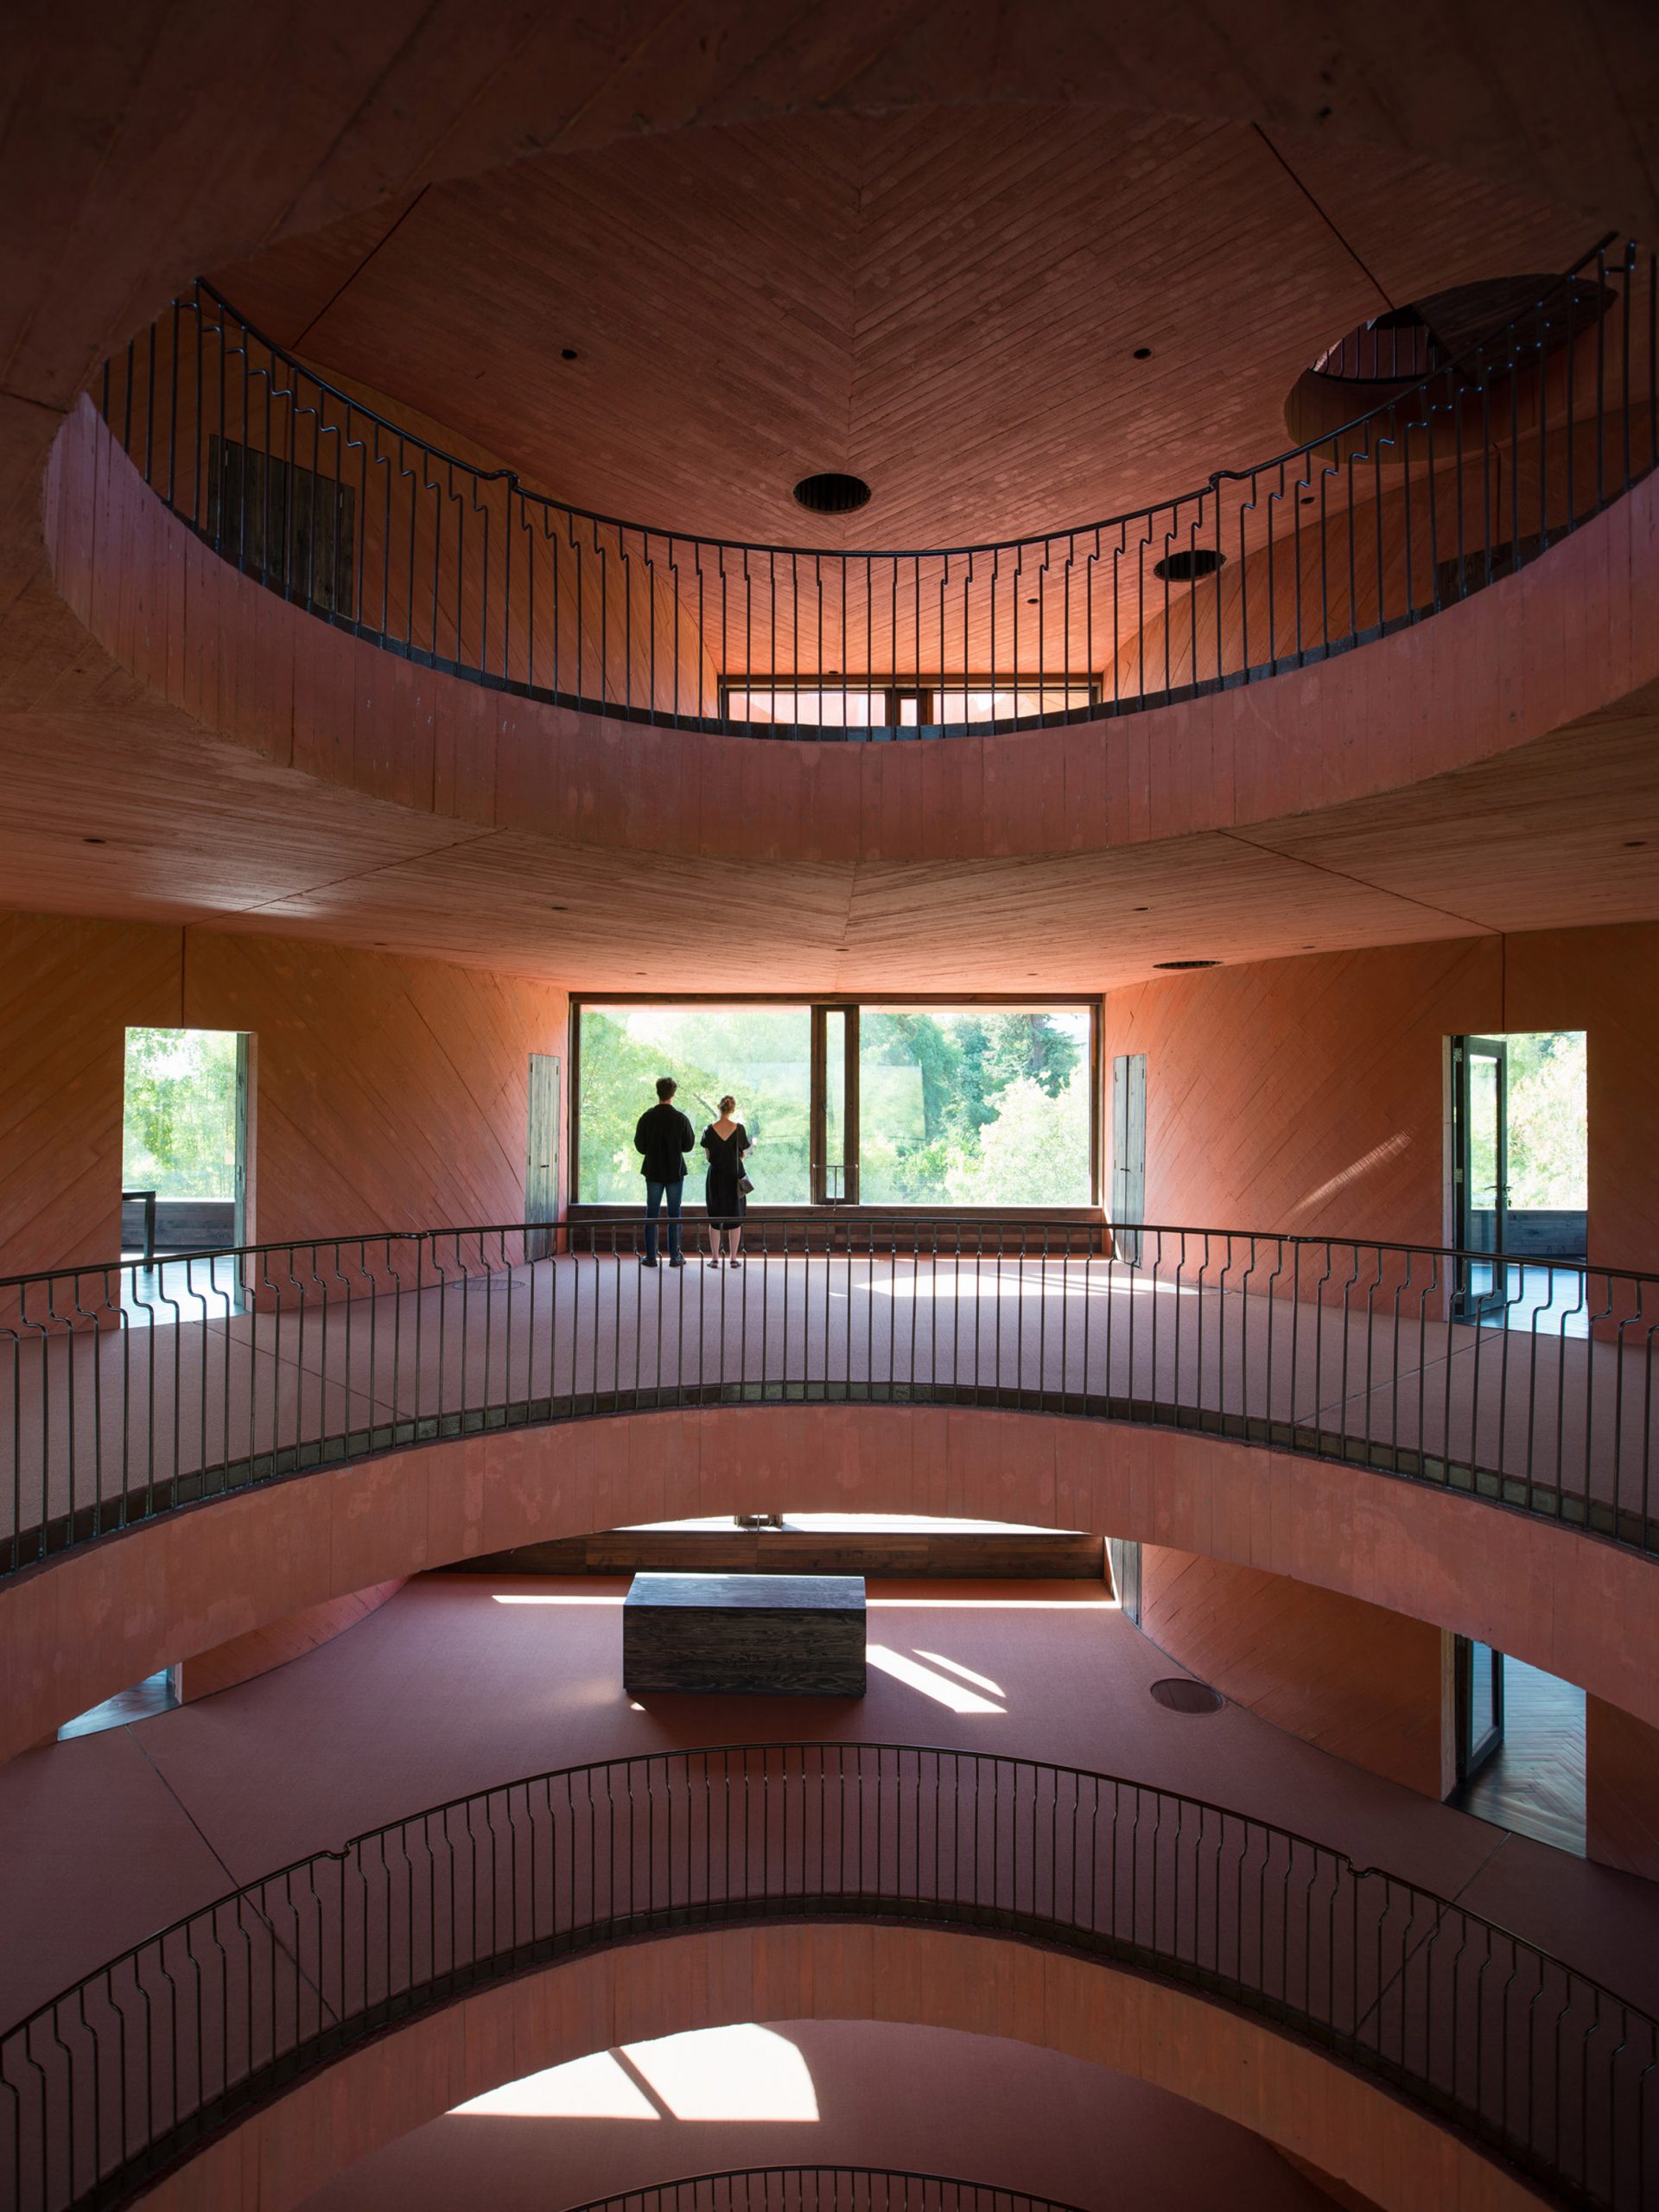 Interior of INES innovation centre by Pezo von Ellrichshausen